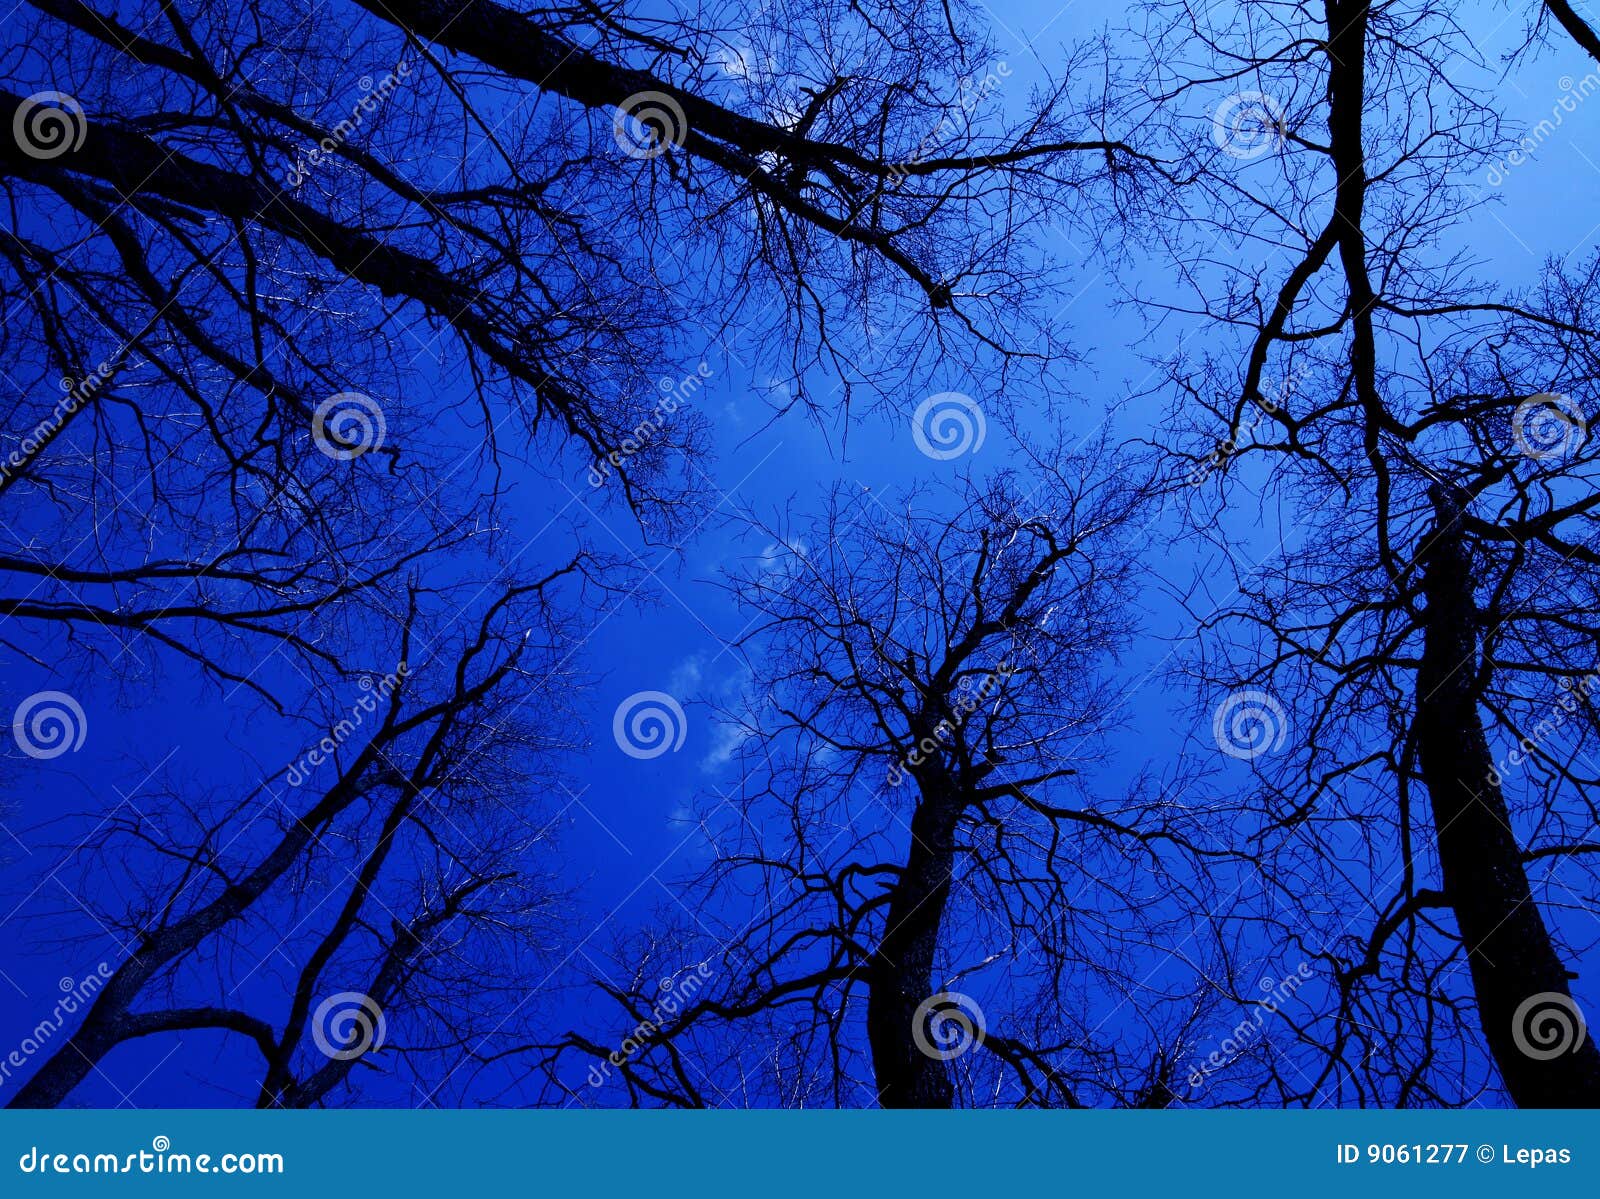 Tree silhouette stock image. Image of blue, horizontal - 9061277